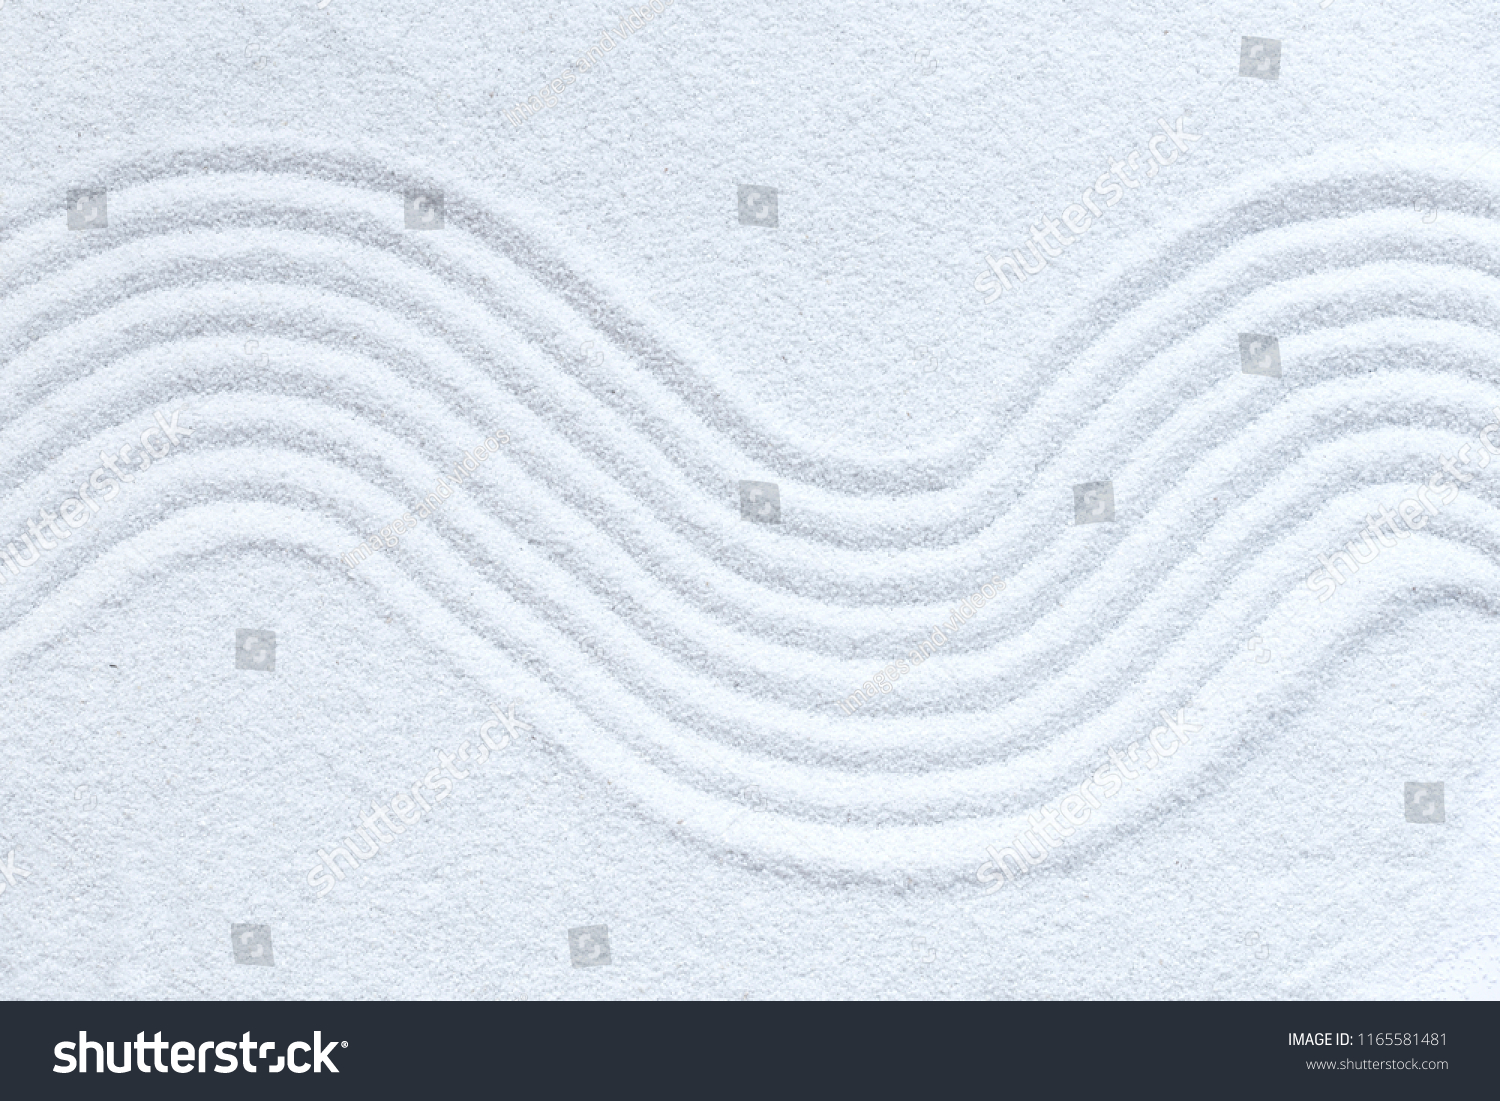 Zen pattern in white sand #1165581481